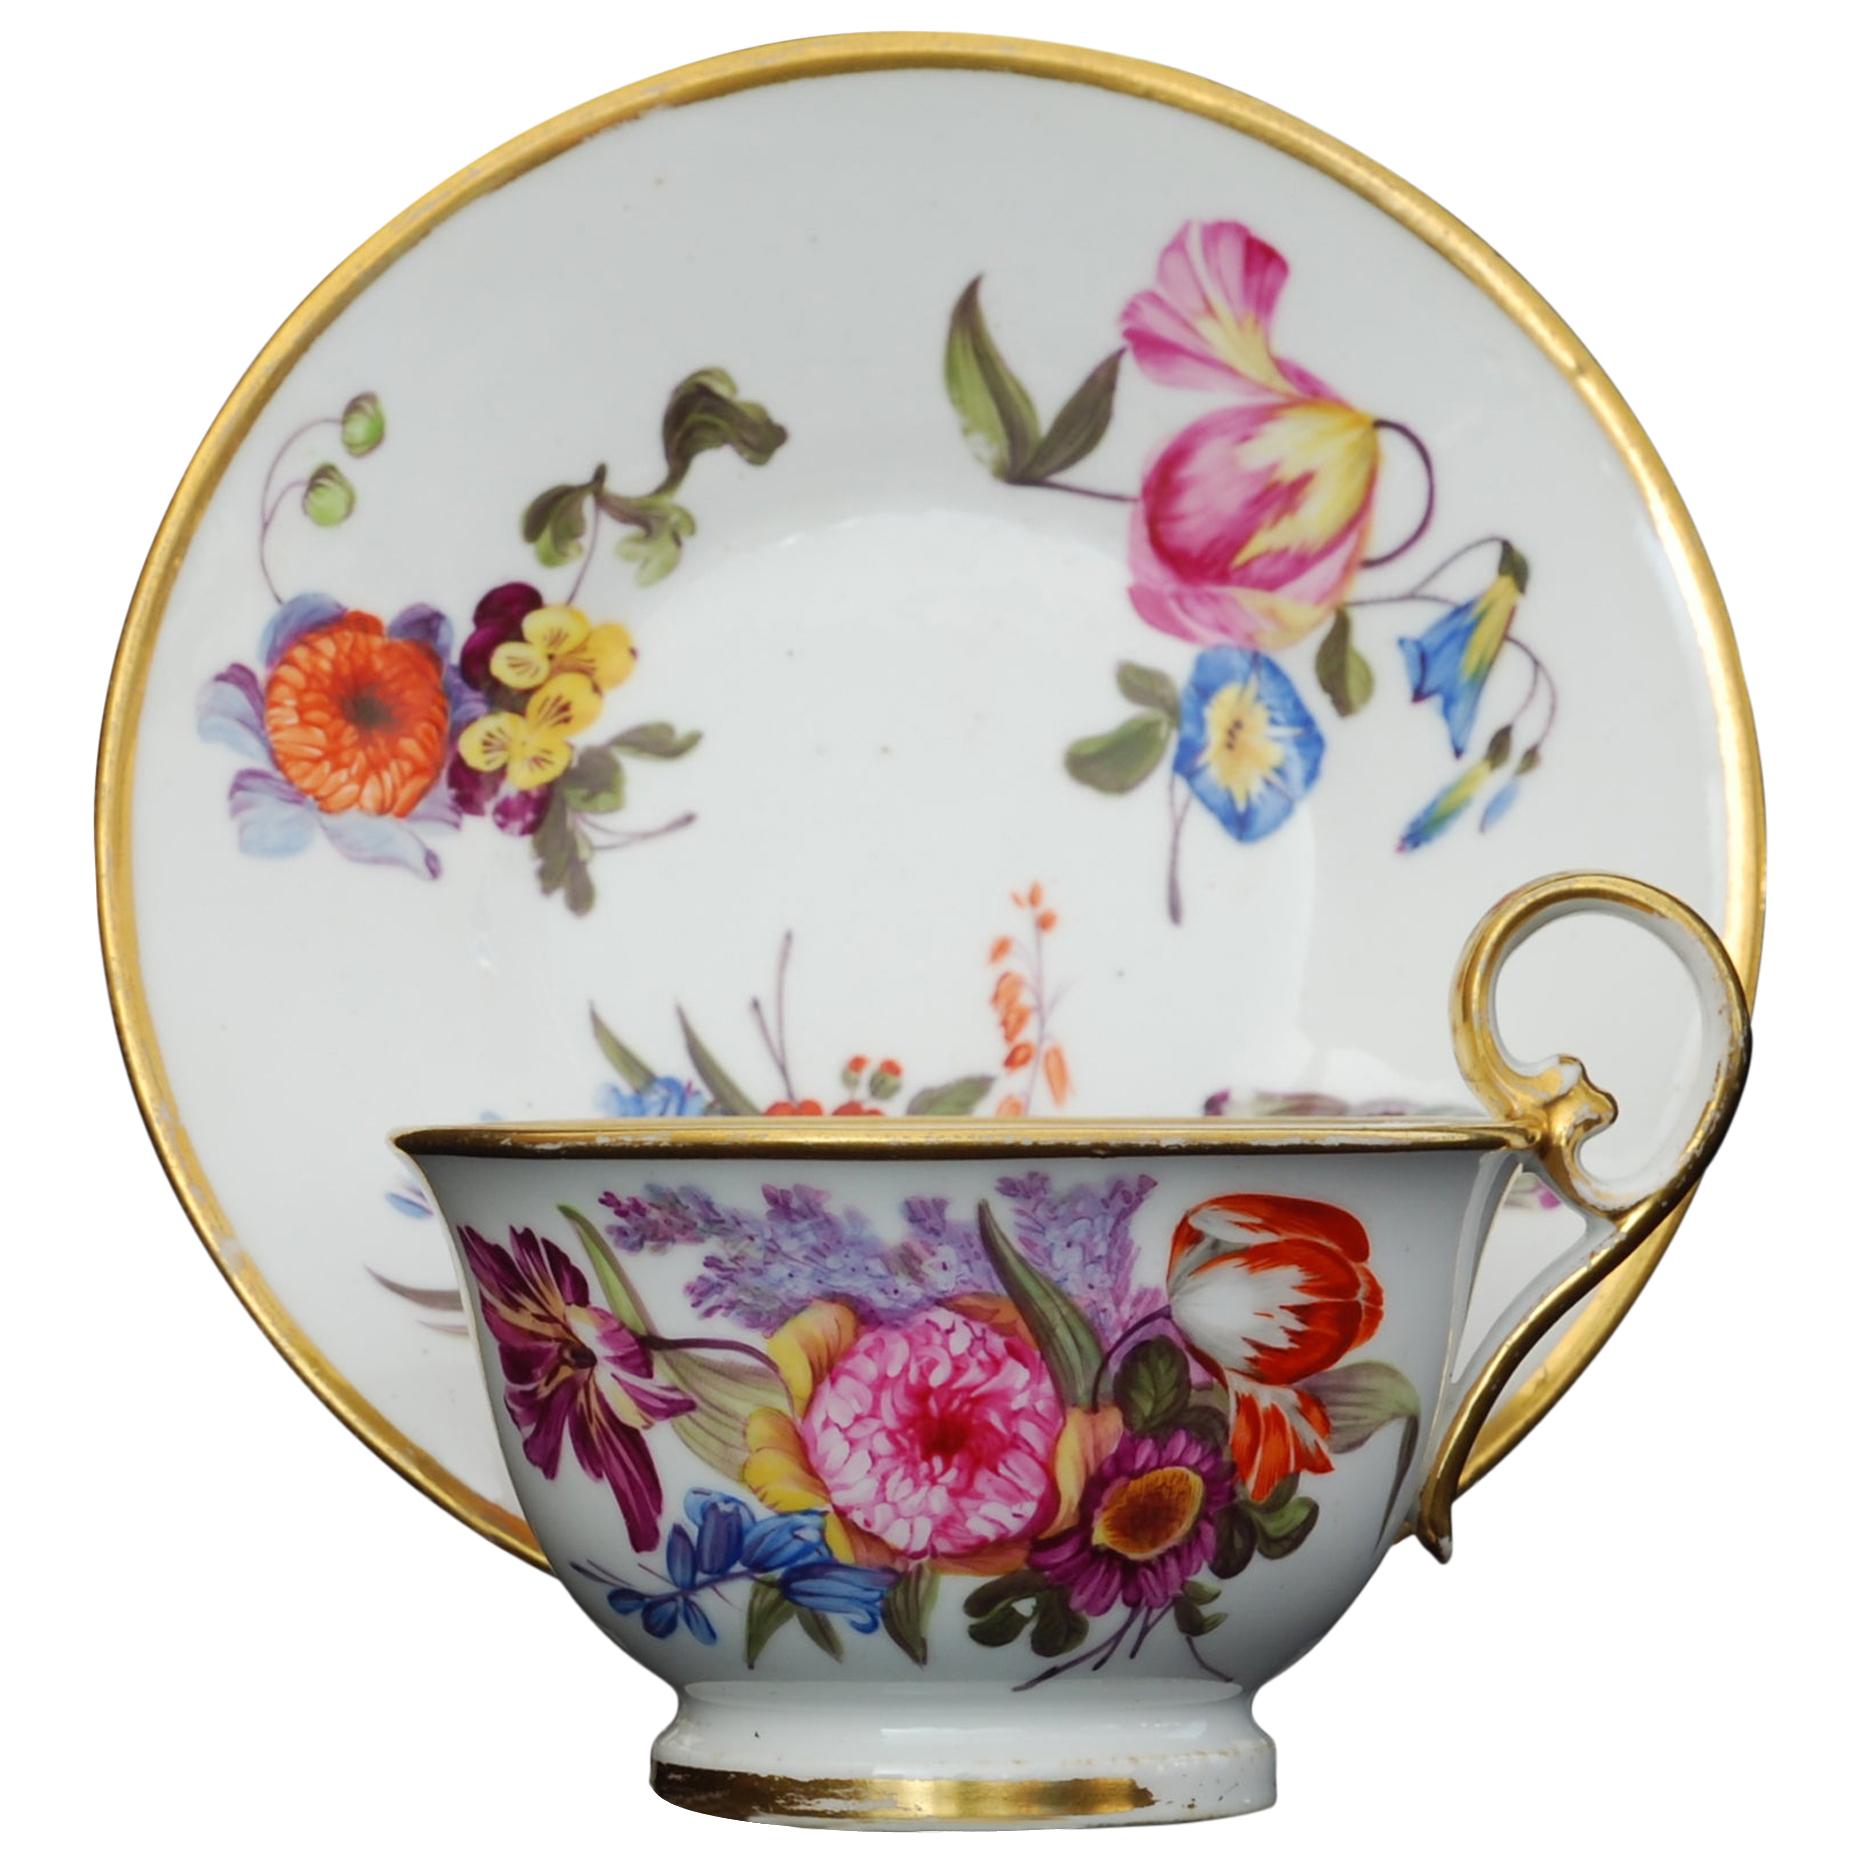 Tasse à thé et soucoupe en porcelaine de Nantgarw, vers 1815